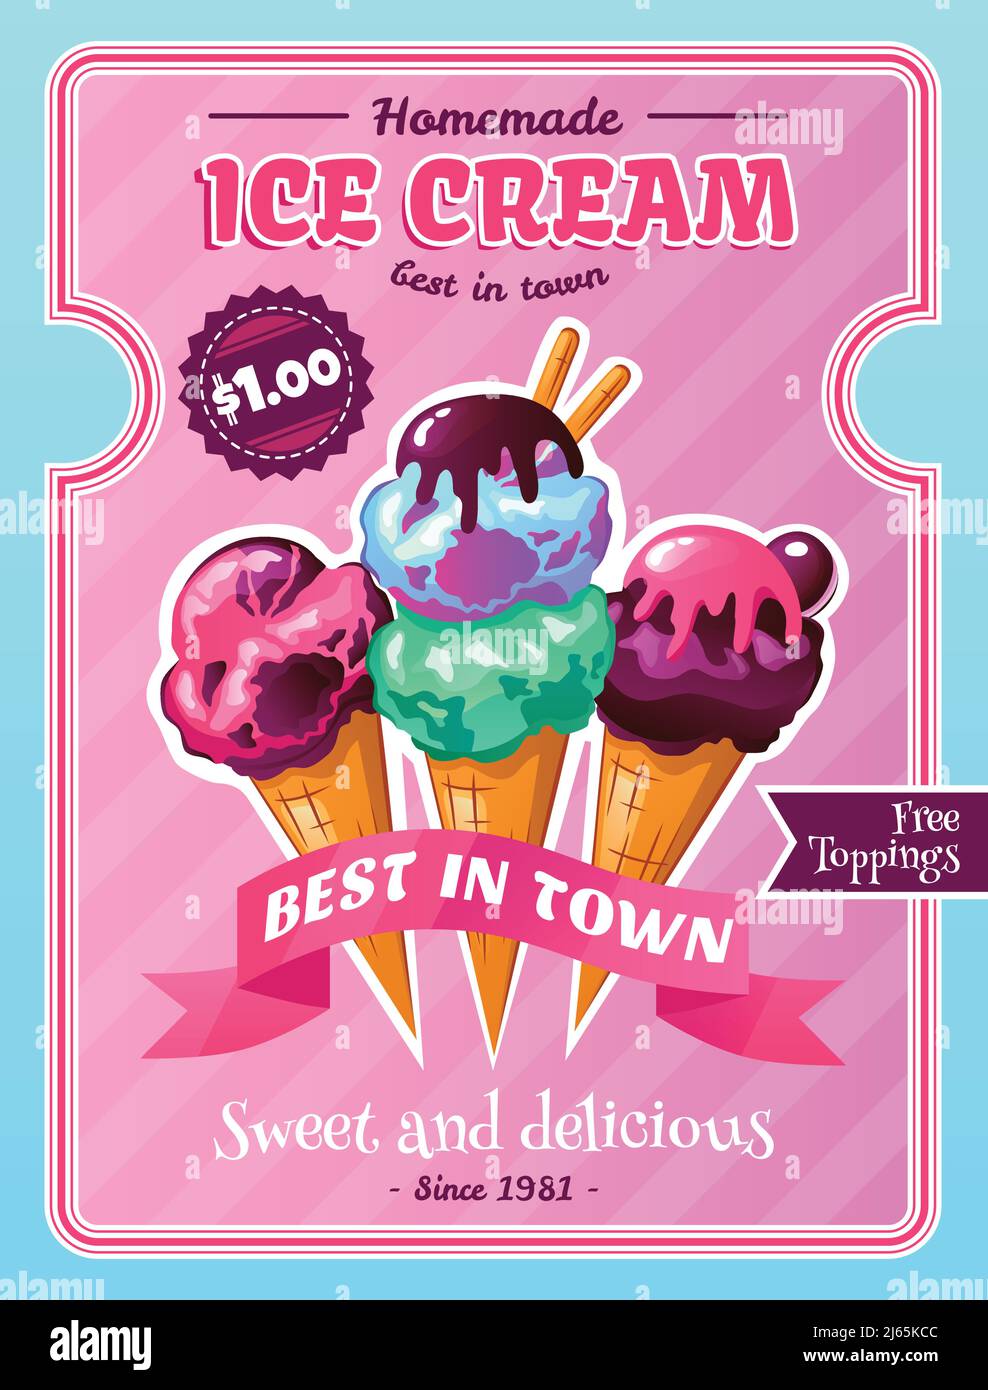 Affiche publicitaire sur les desserts faits maison du café à la crème glacée avec de délicieux cônes illustration vectorielle de fond rose avec garnitures en chocolat Illustration de Vecteur